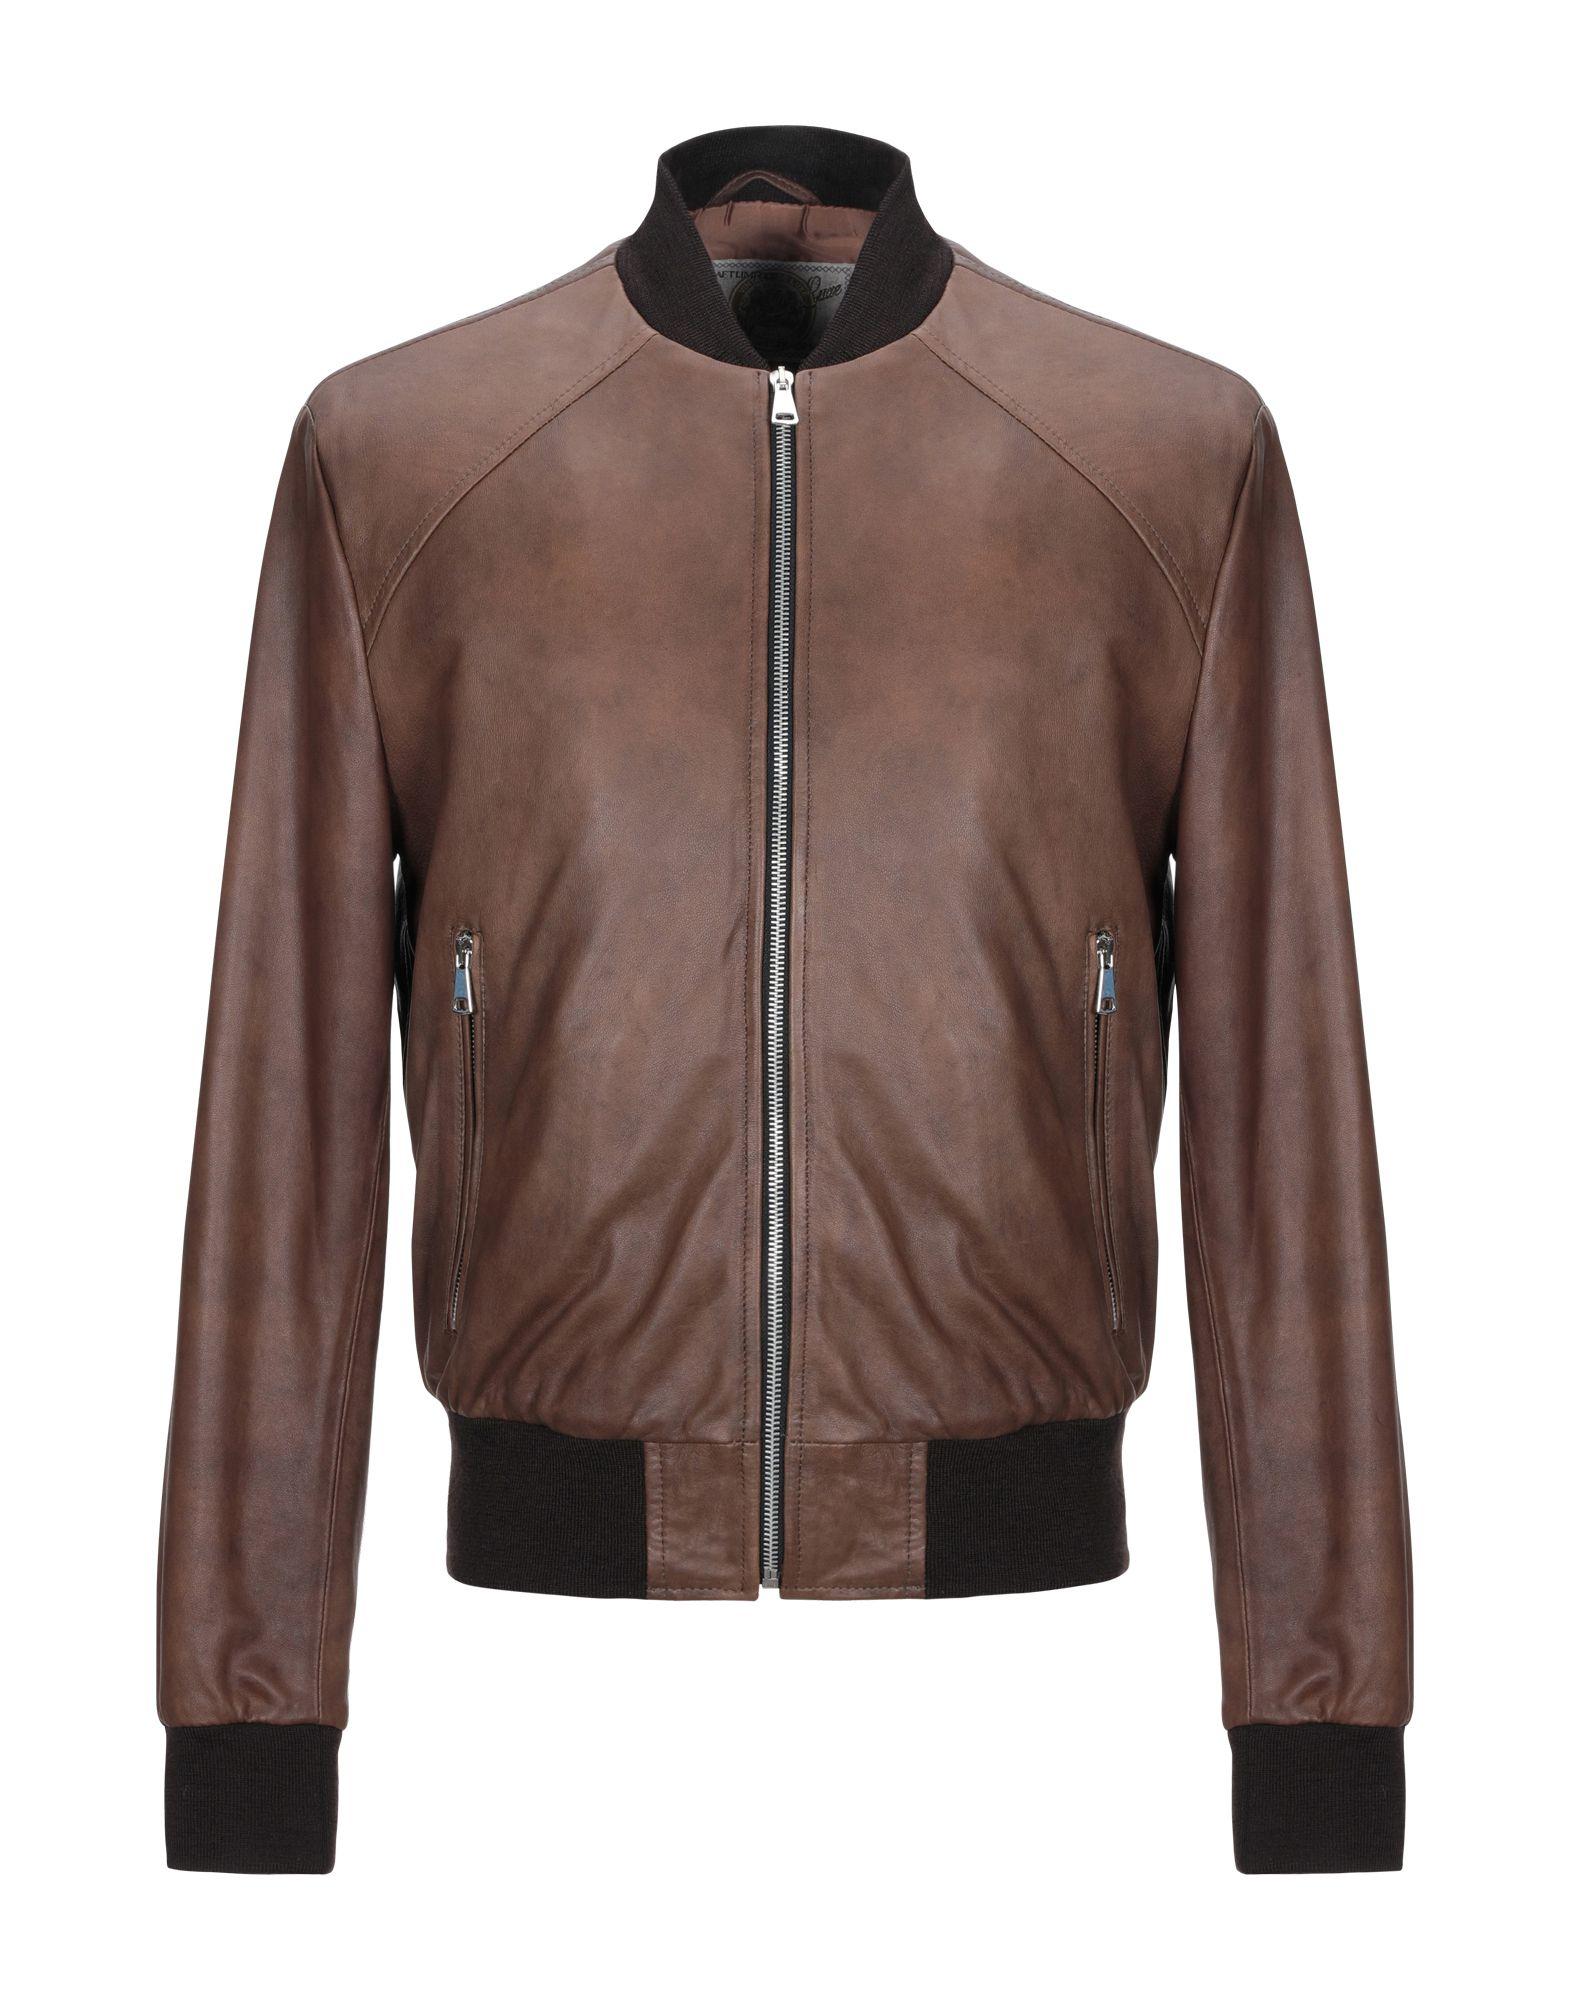 Vintage De Luxe Leather Jacket in Dark Brown (Brown) for Men - Lyst